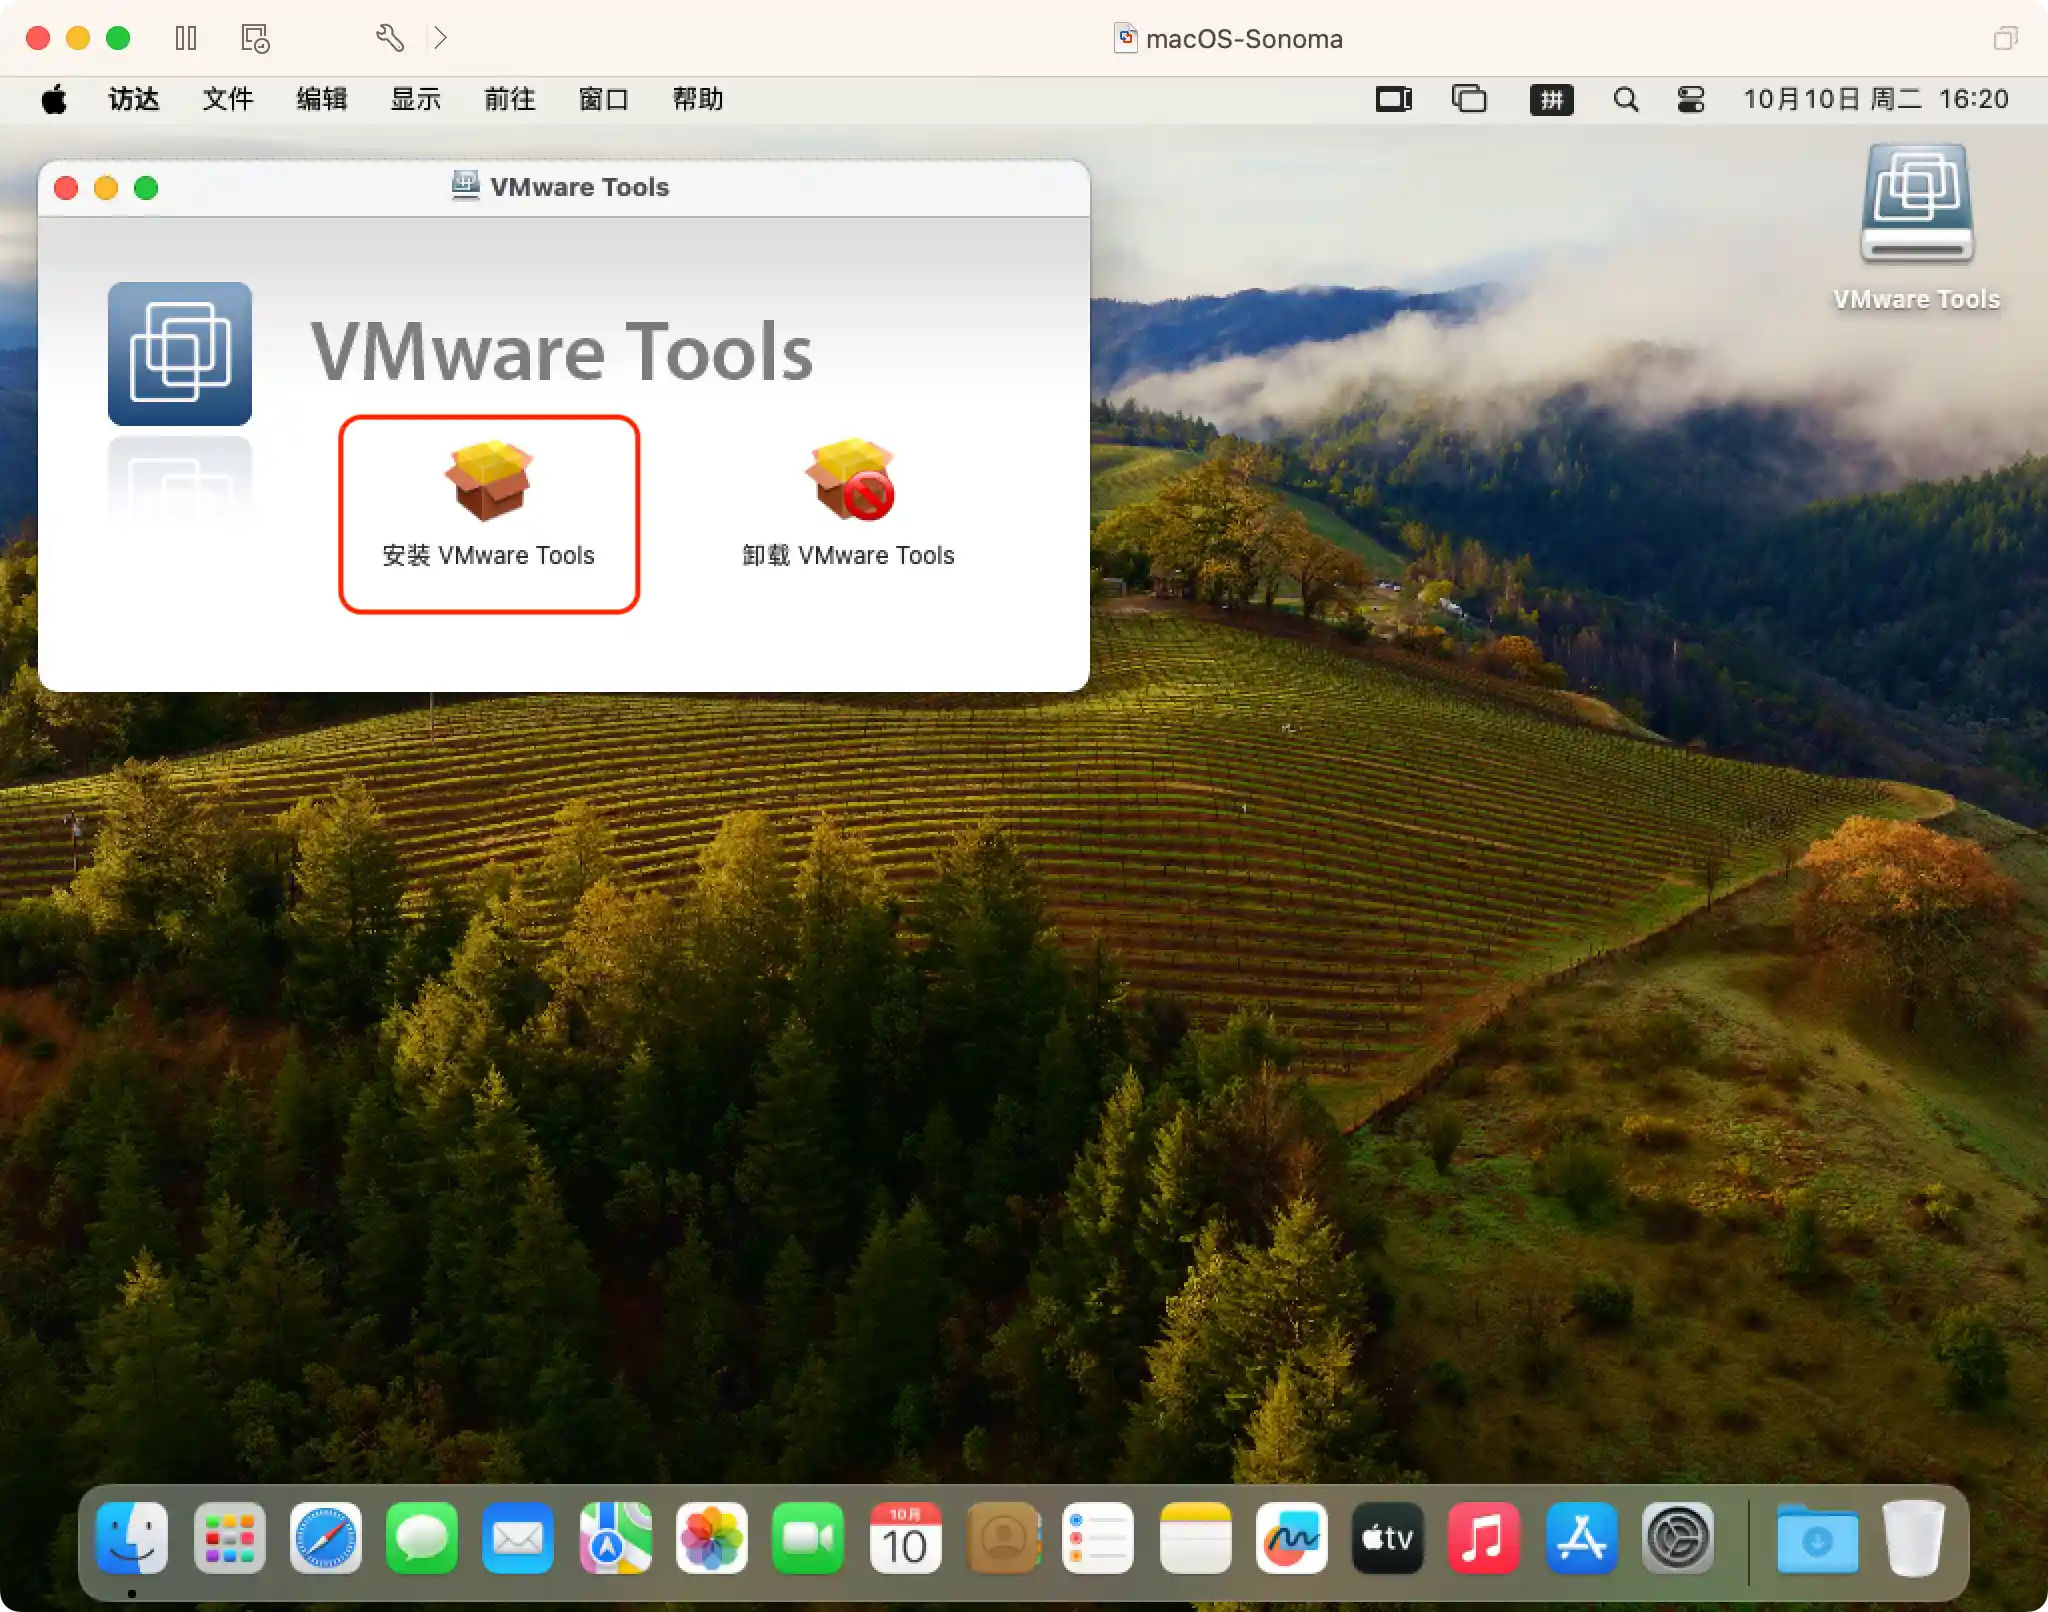 install-vmware-tools-on-macos